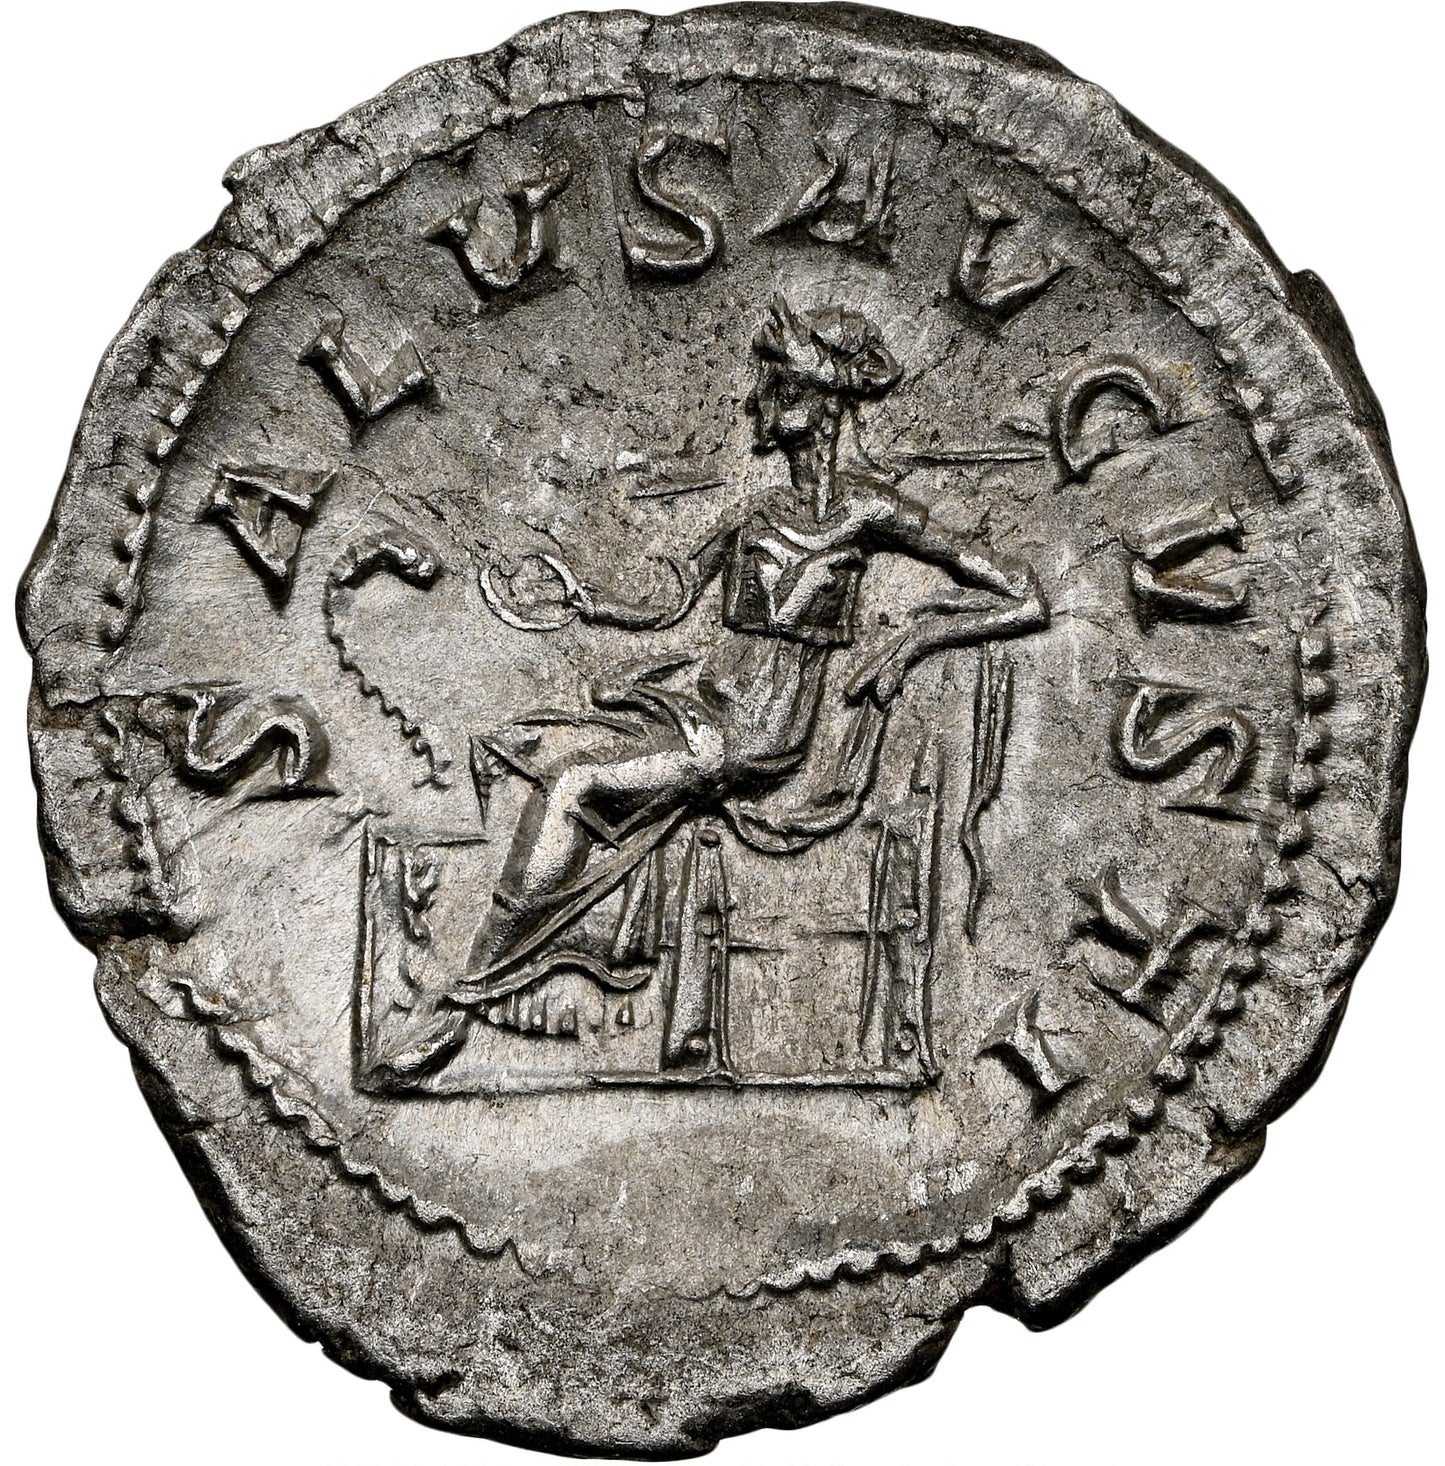 Roman Empire - Maximinus I - Silver Denarius - NGC AU